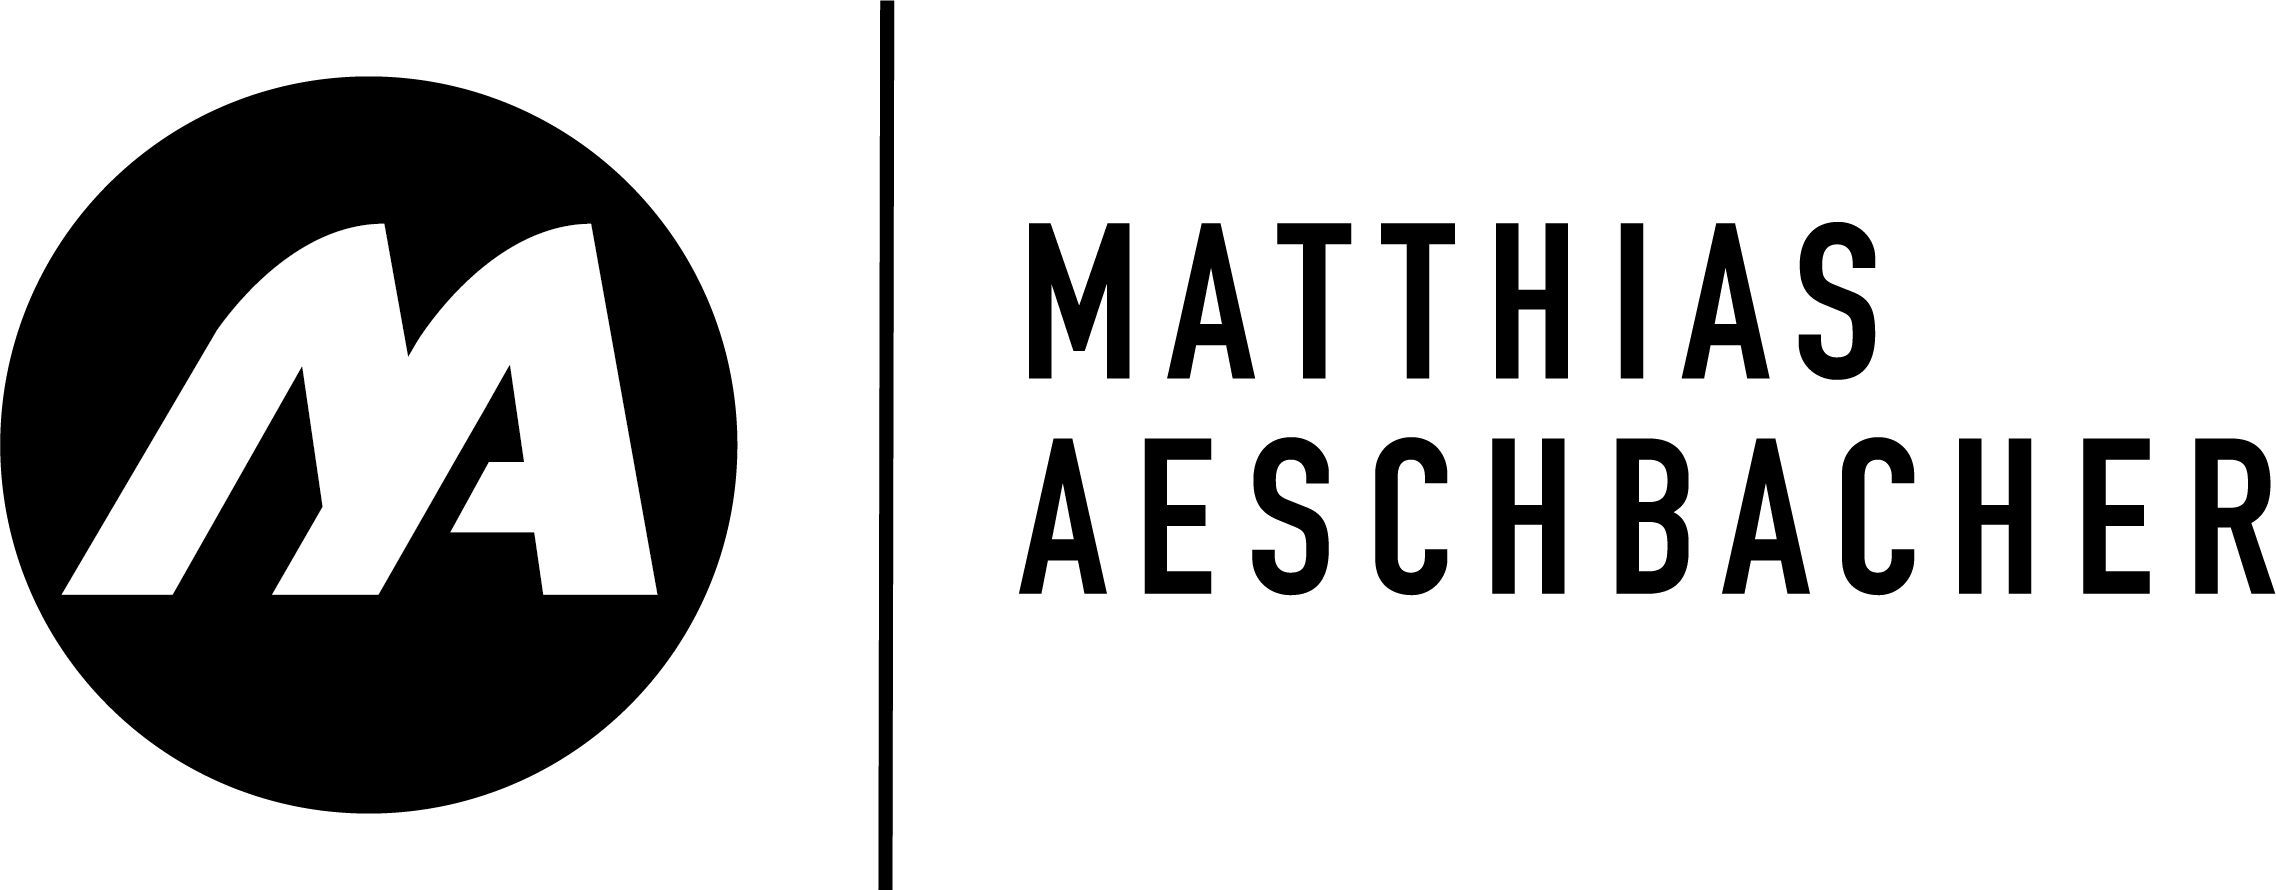 Fanshop Matthias Aeschbacher